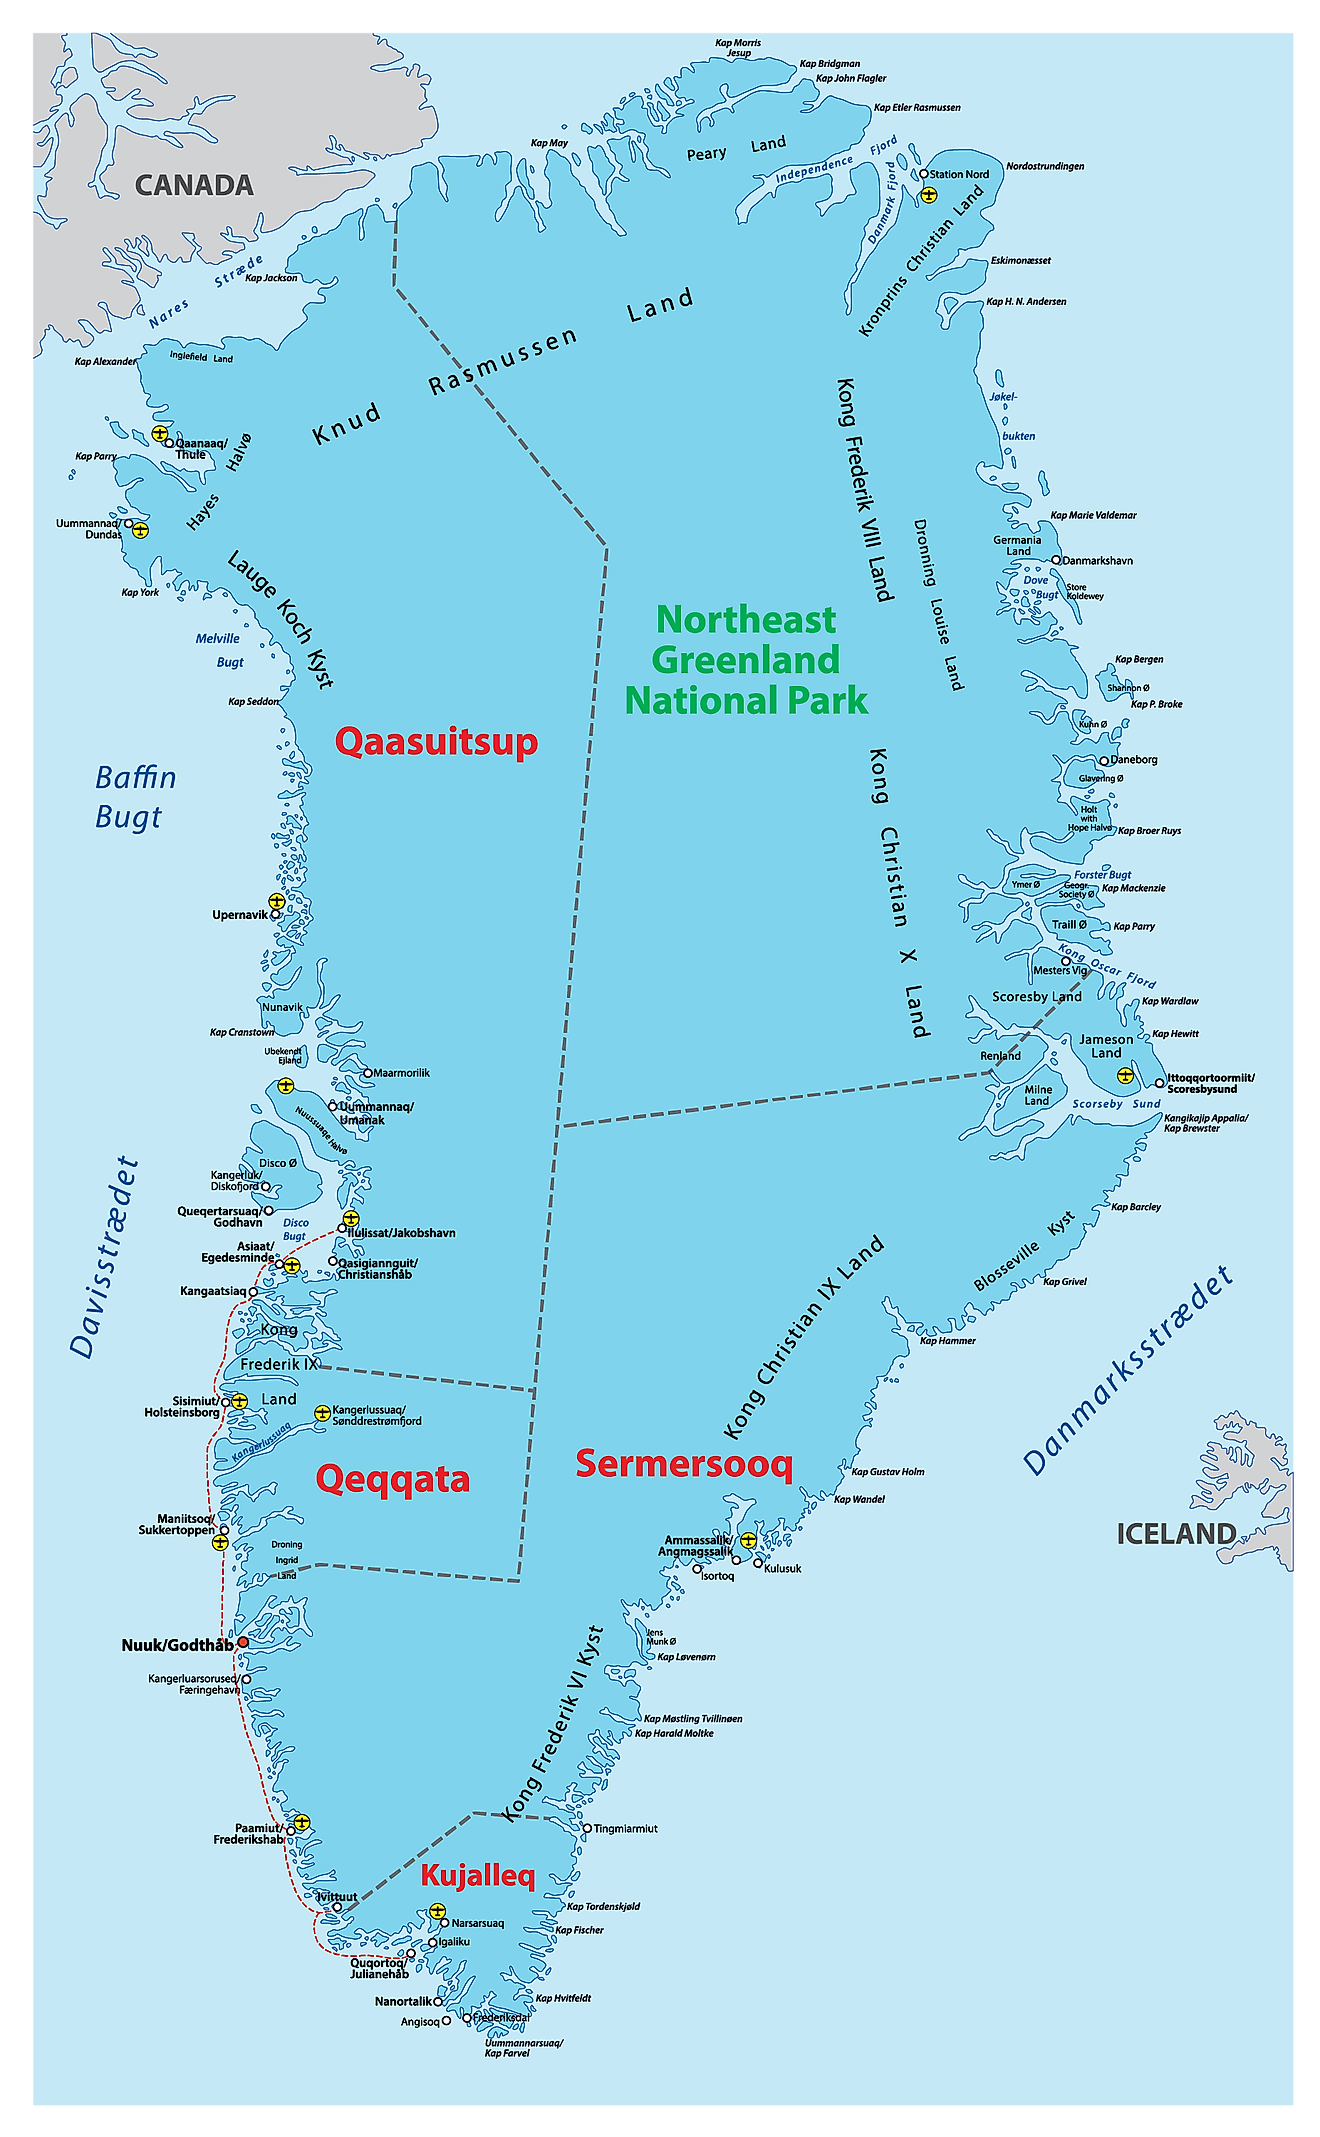 Mapa político de Groenlandia que muestra sus 5 municipios y la ciudad capital de Nuuk.